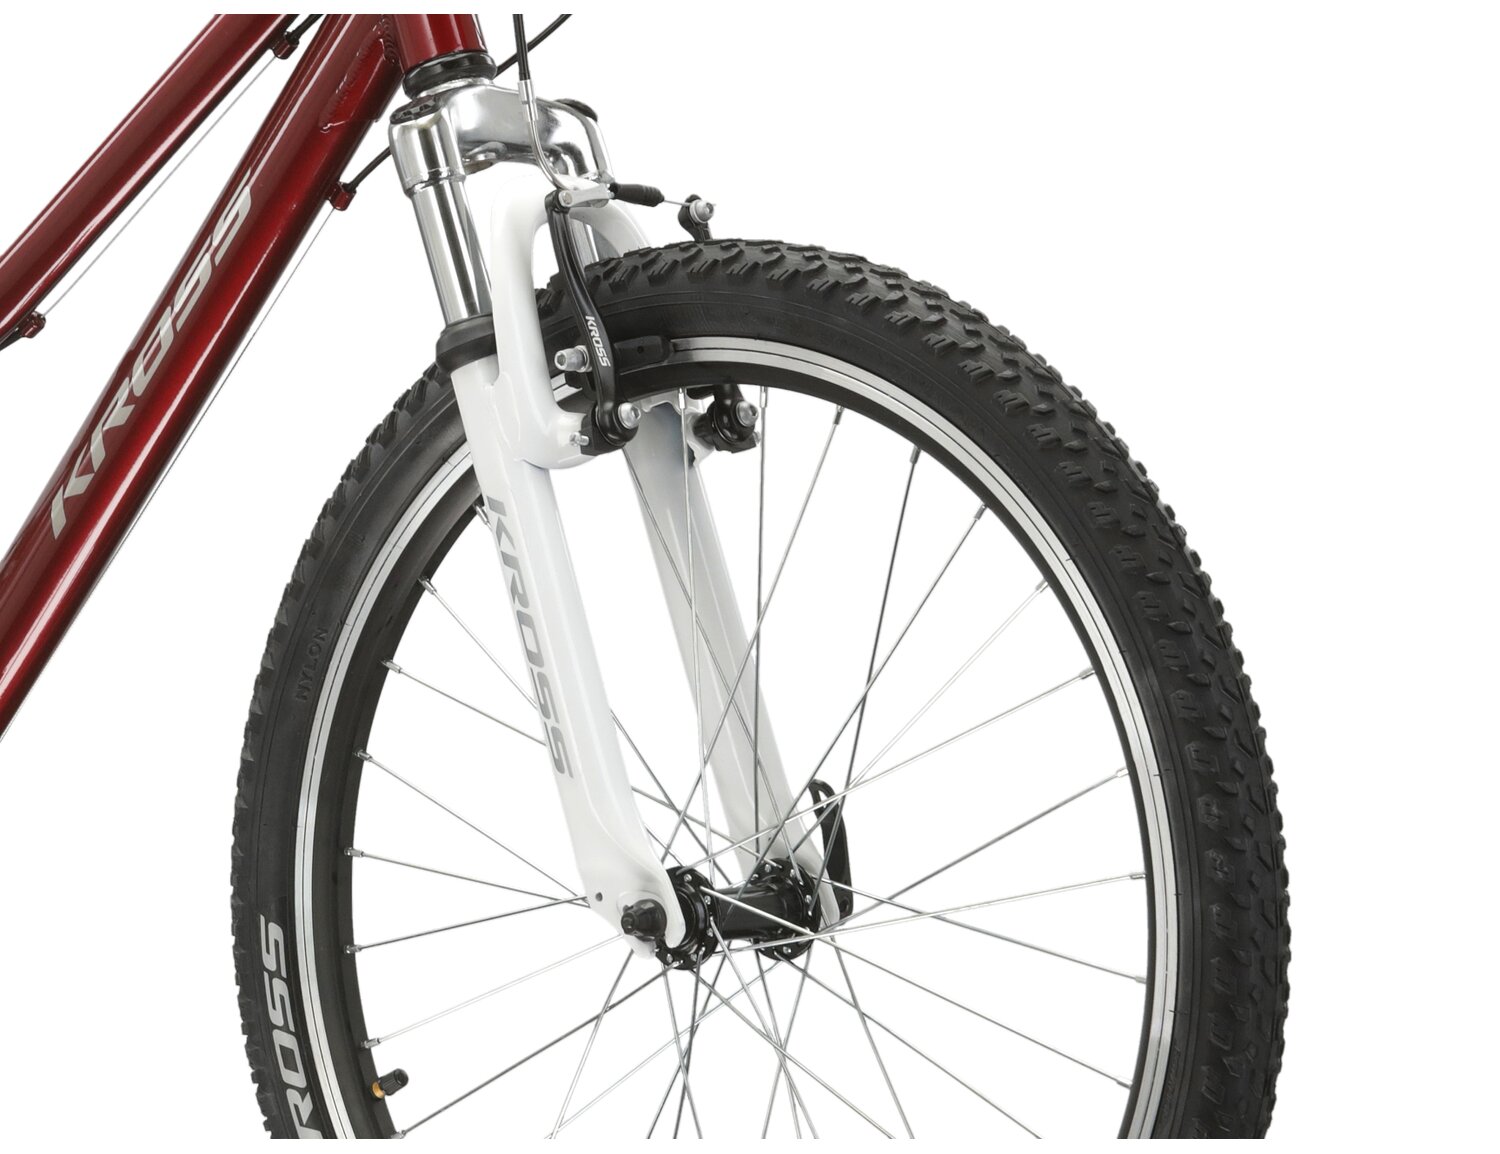  Aluminowa rama, amortyzowany widelec o skoku 40mm oraz opony o szerokości 1,95 cala w rowerze juniorskim KROSS Junior 1.0 